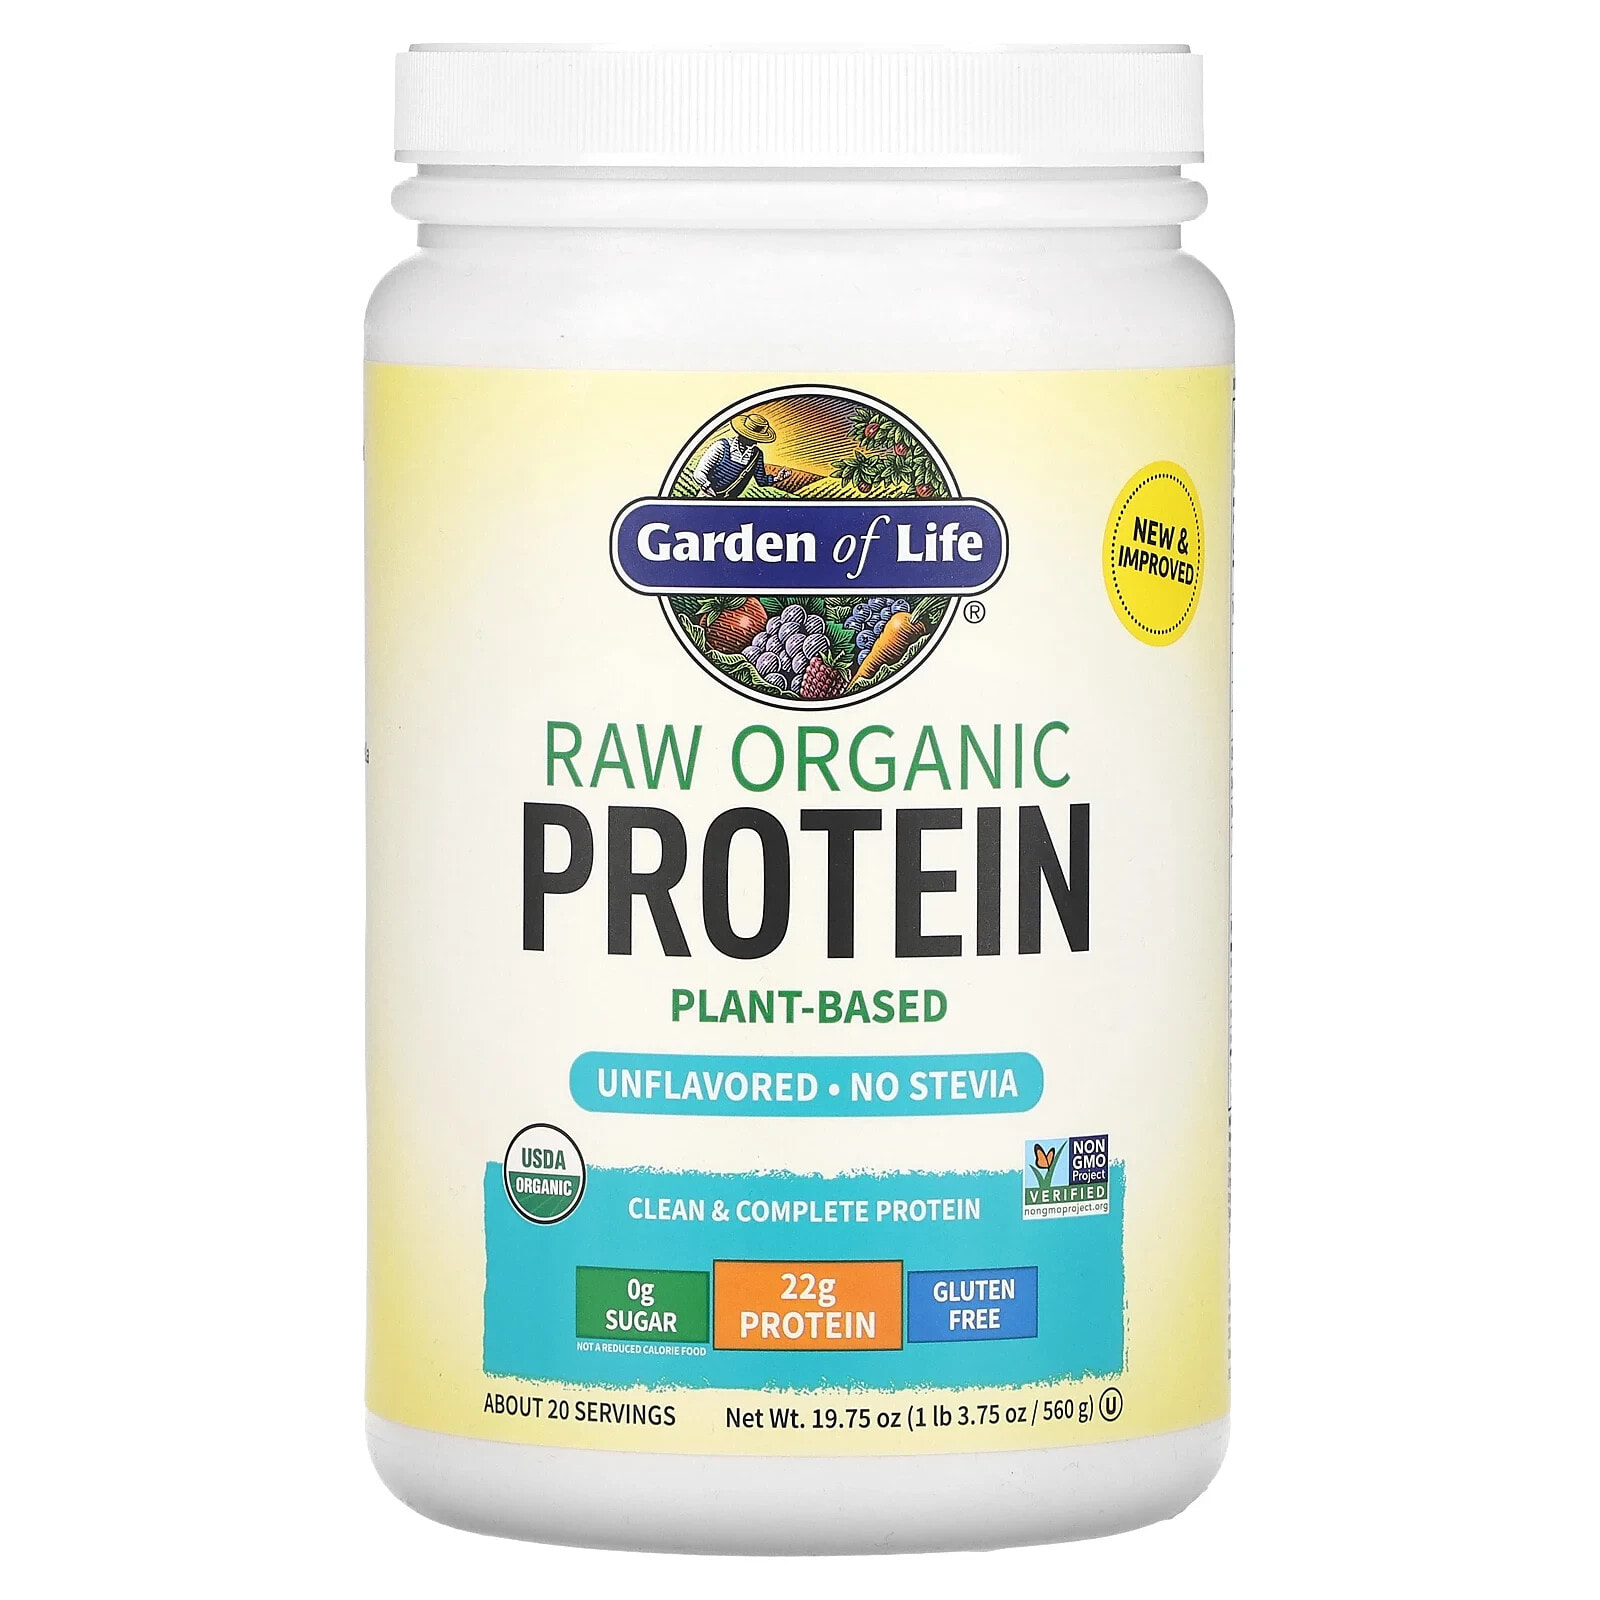 RAW Organic Protein, Vanilla, 1 lb 7.28 oz (660 g)